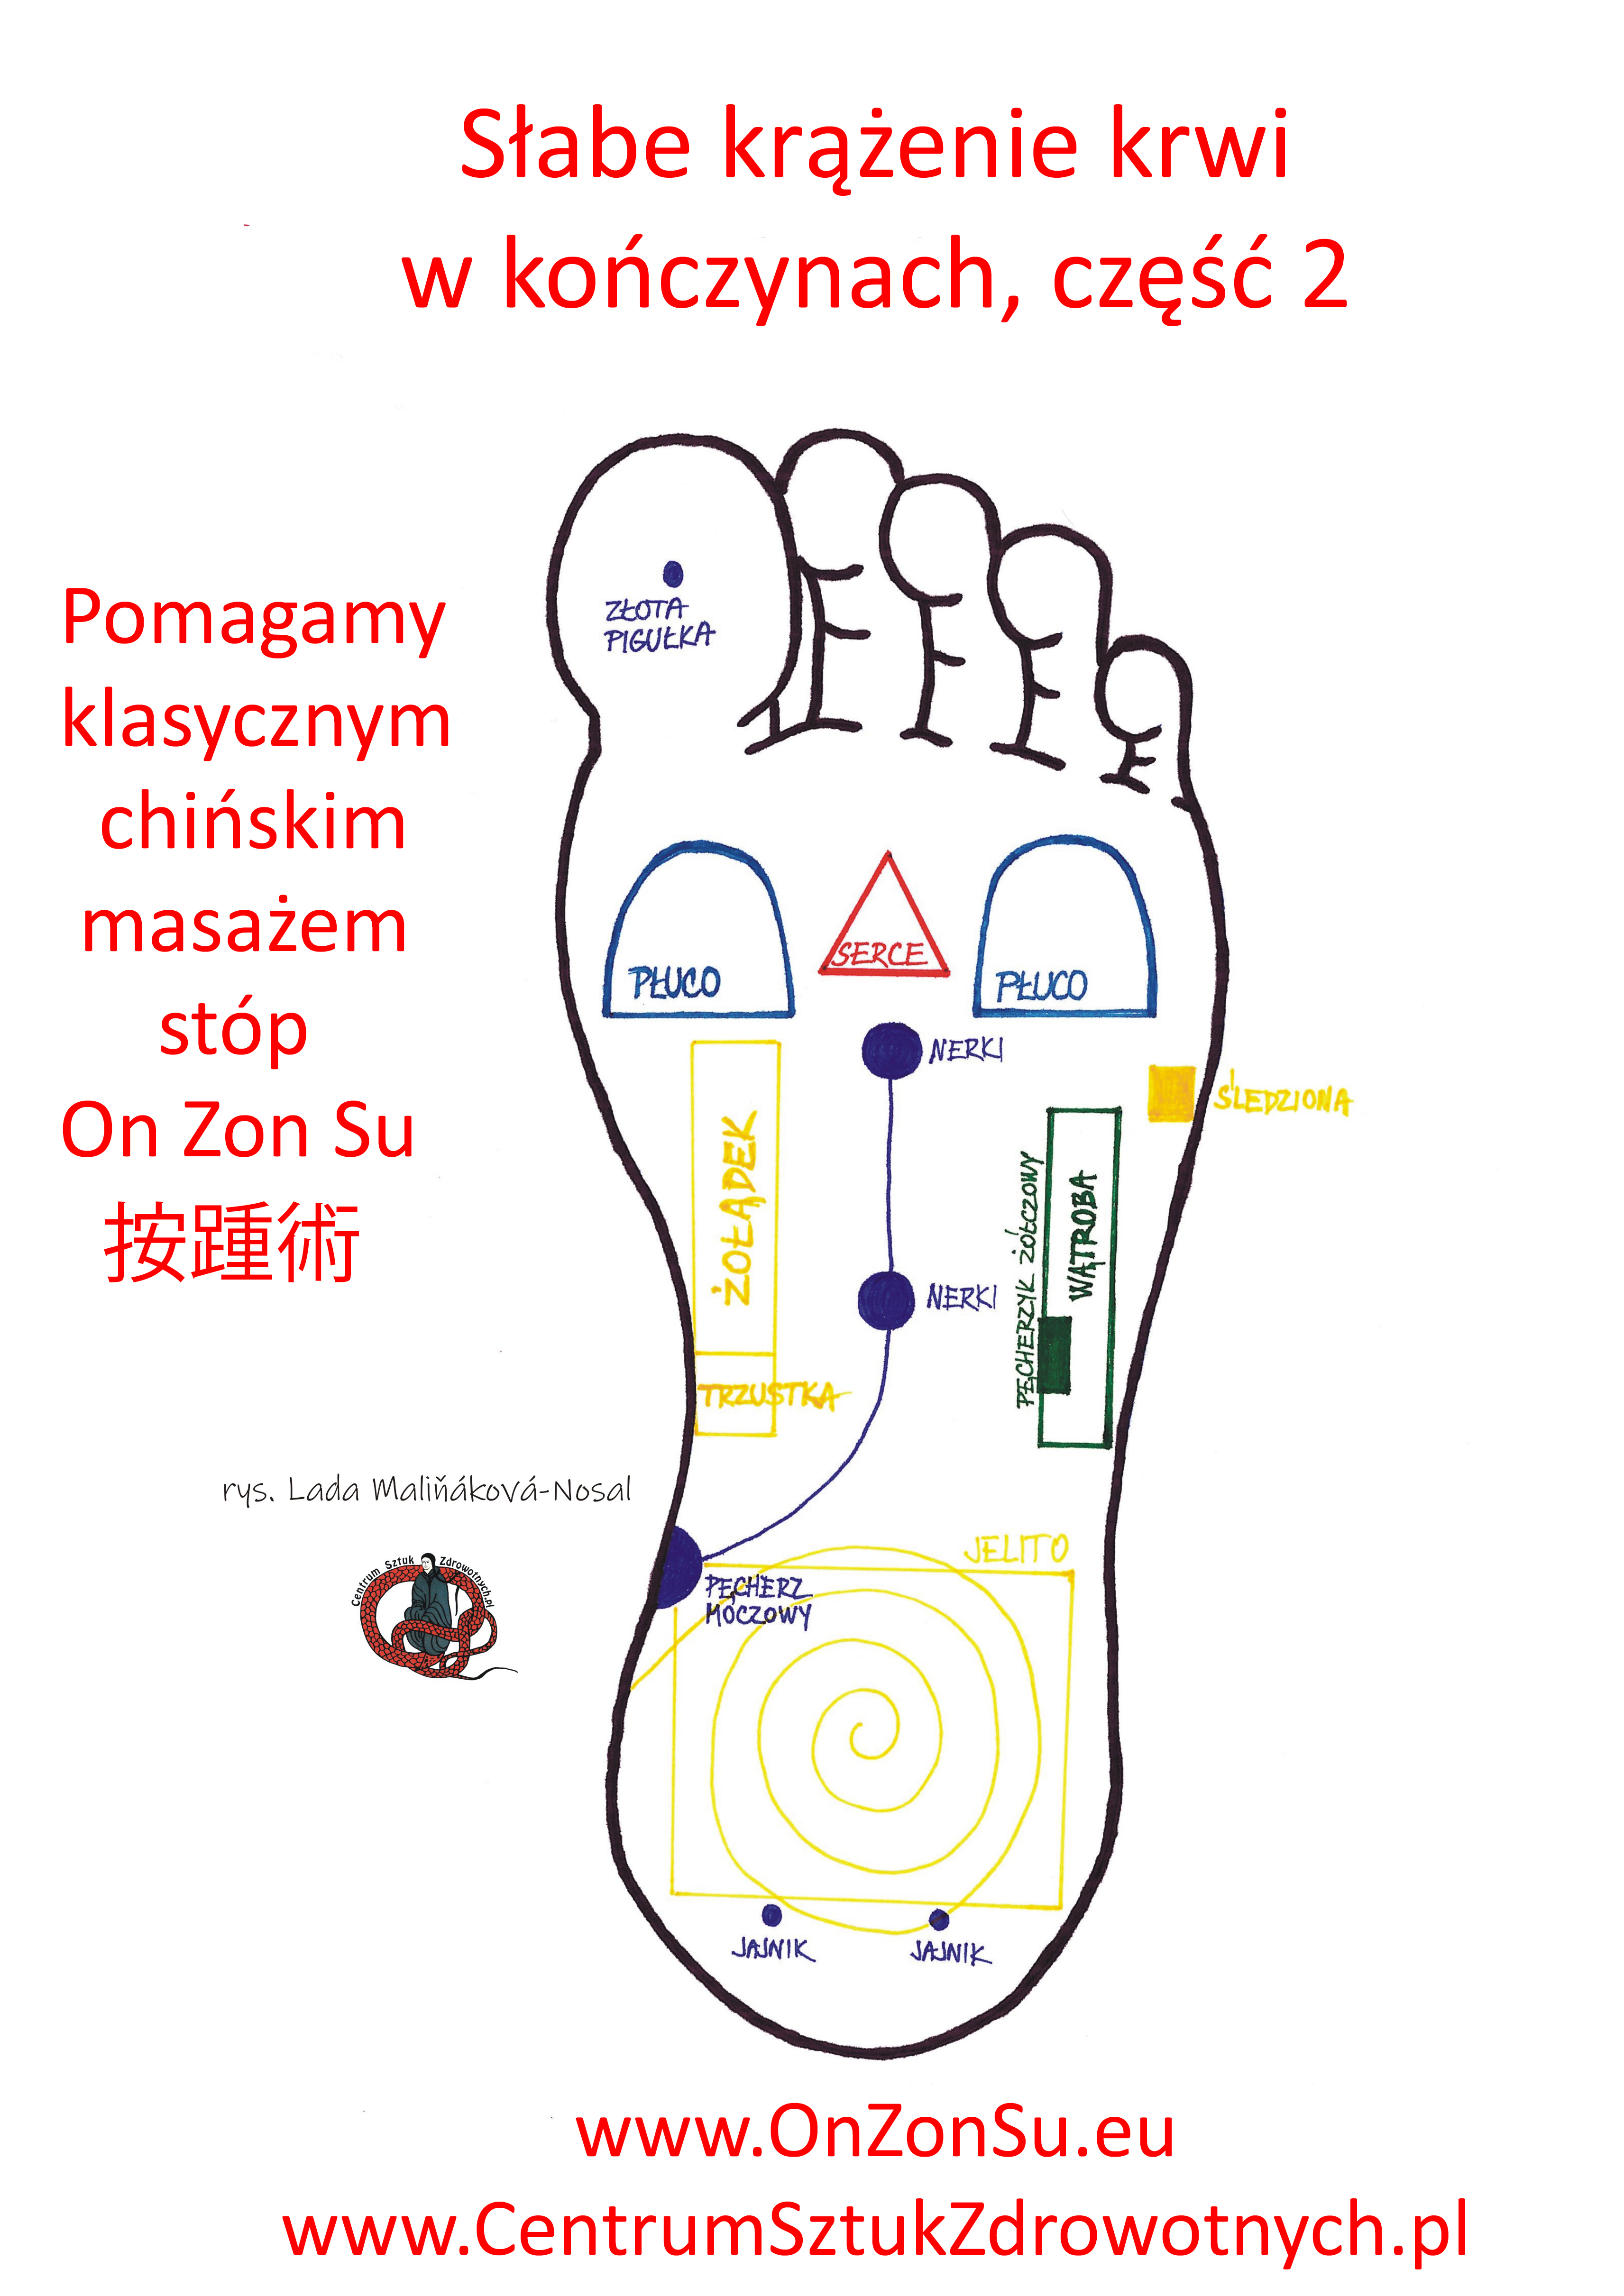 Kurs masażu stóp On Zon Su, Szkolenia refleksologii stóp - Krążenie, słabe krążenie w kończynach, część 2 MEM.JPG